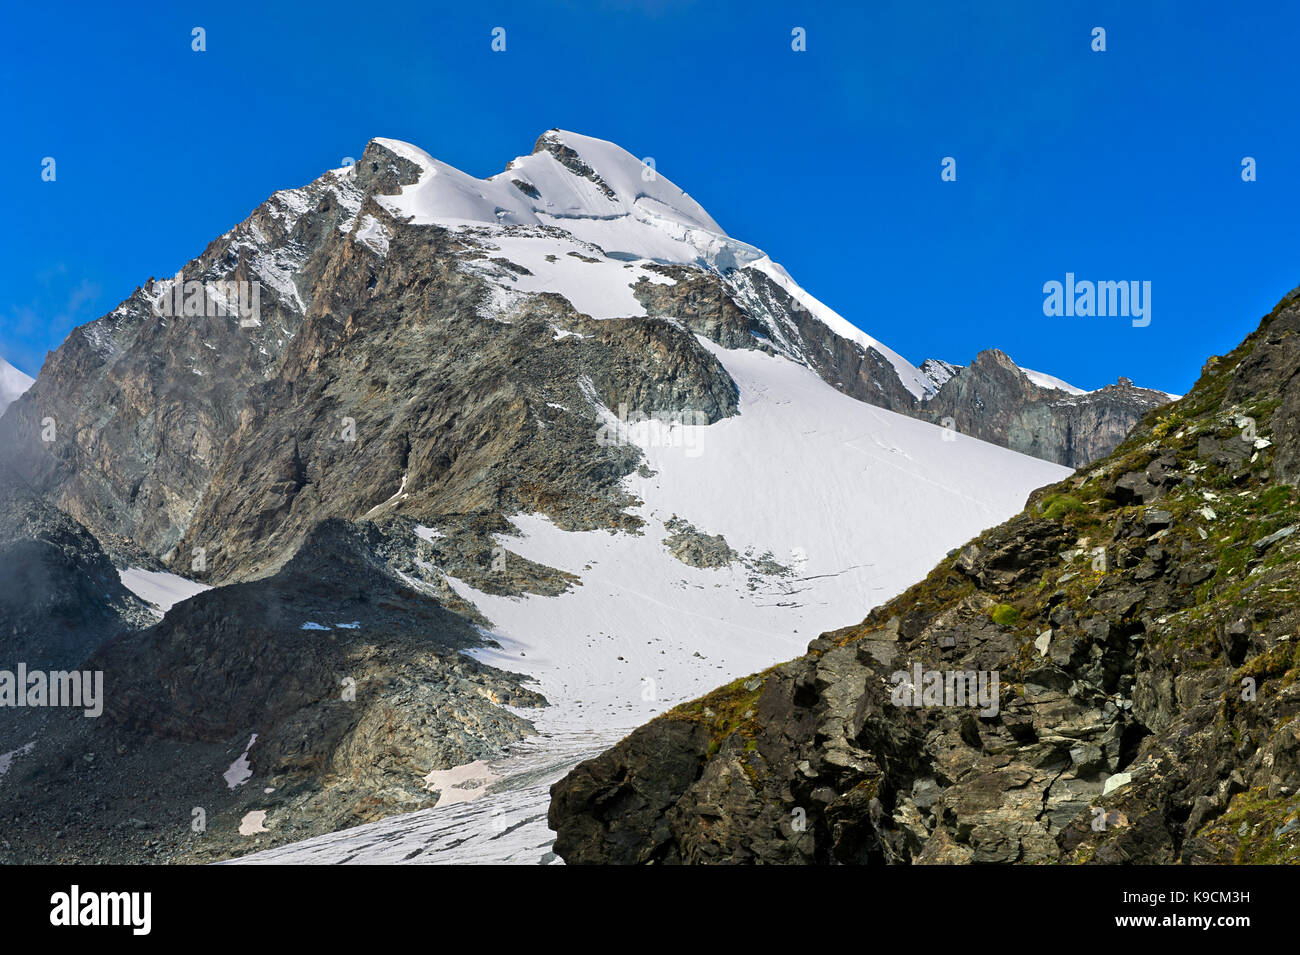 Peak Allalinhorn, Saas-Fee, Valais, Switzerland Stock Photo